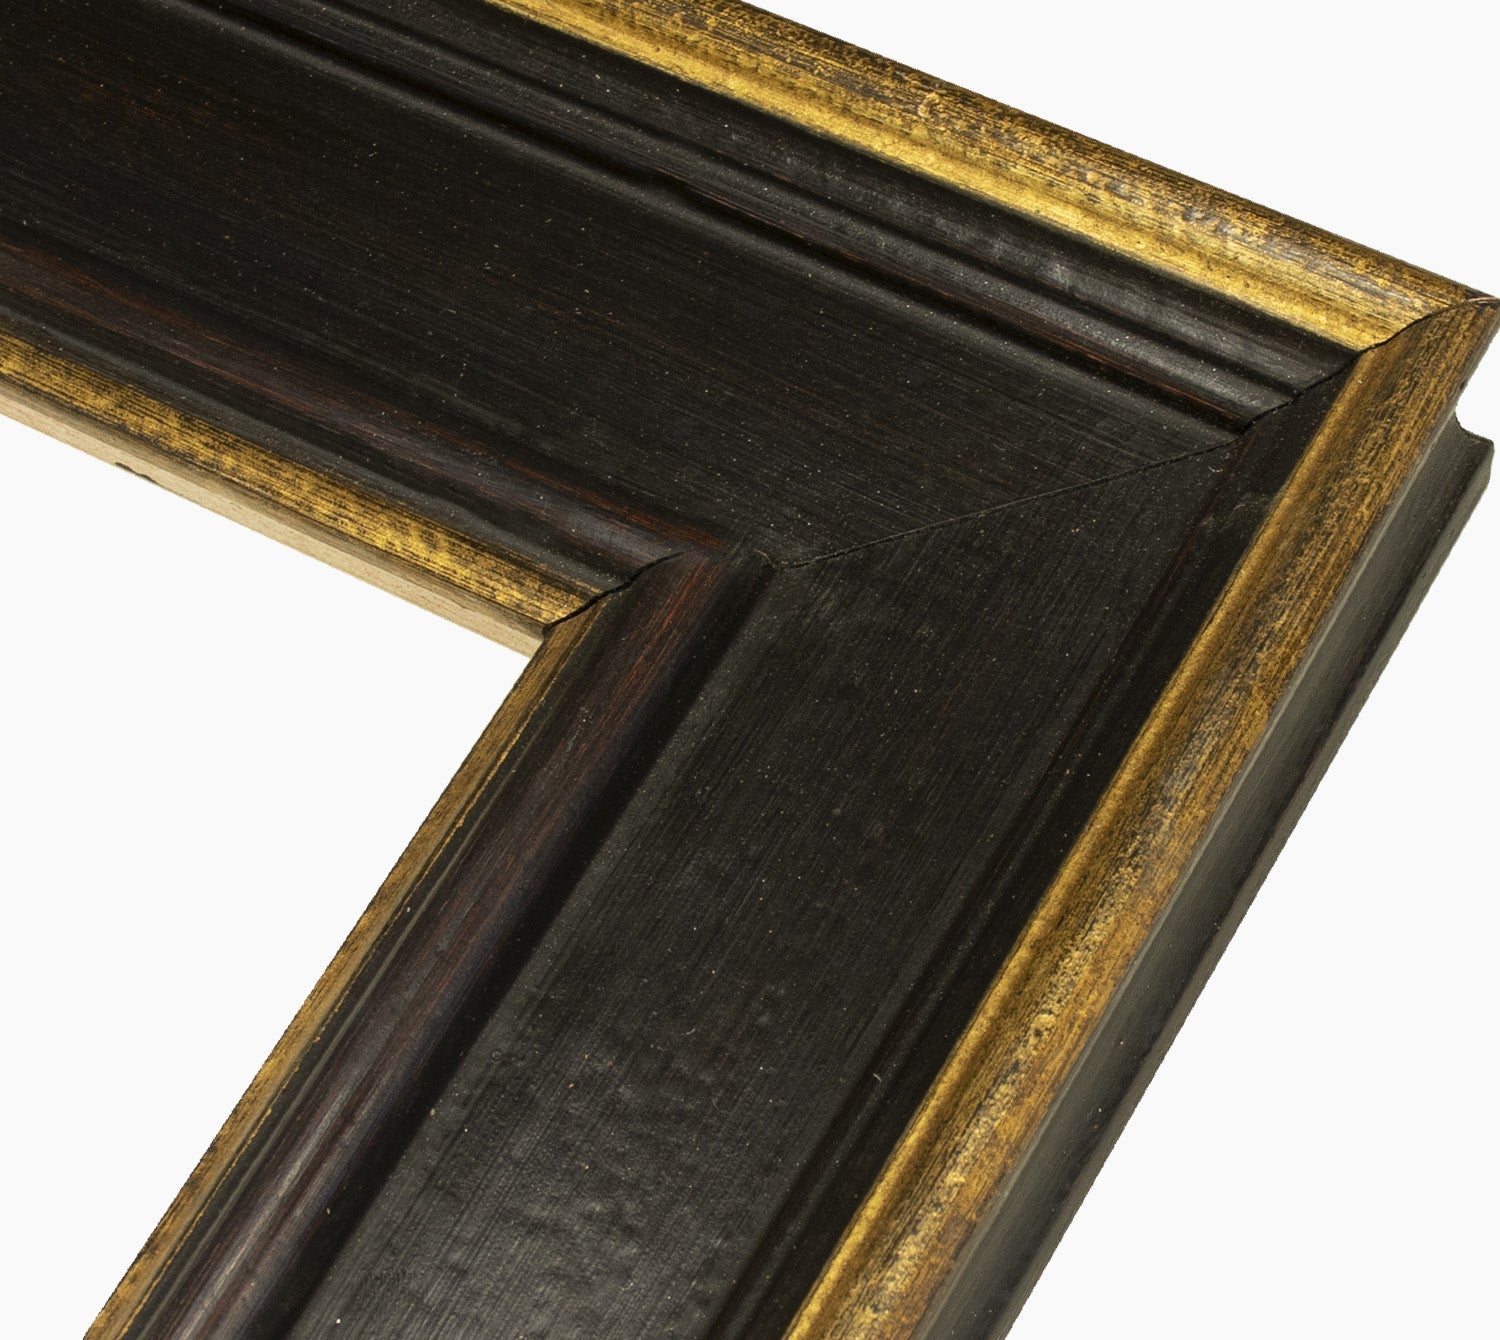 740.601 cadre en bois noir avec des fils d'or mesure de profil